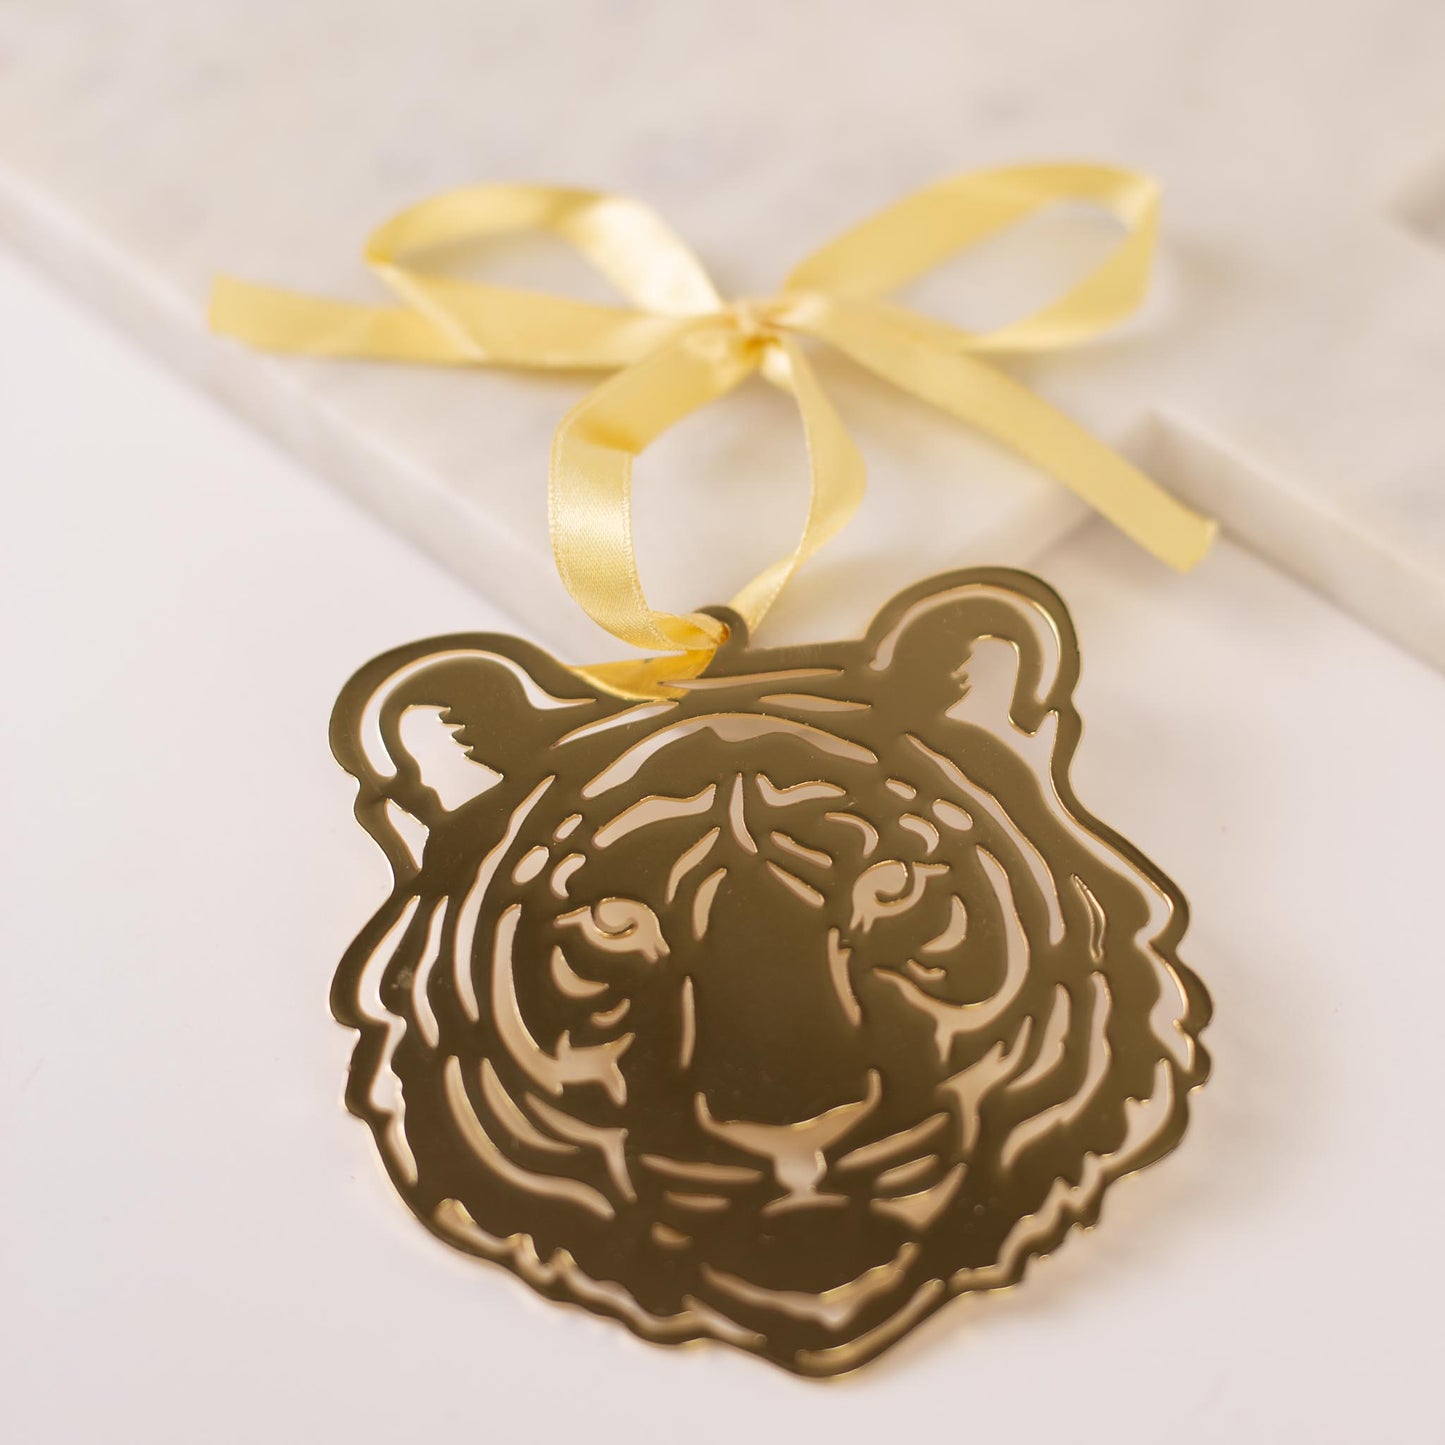 Tiger Face Ornament